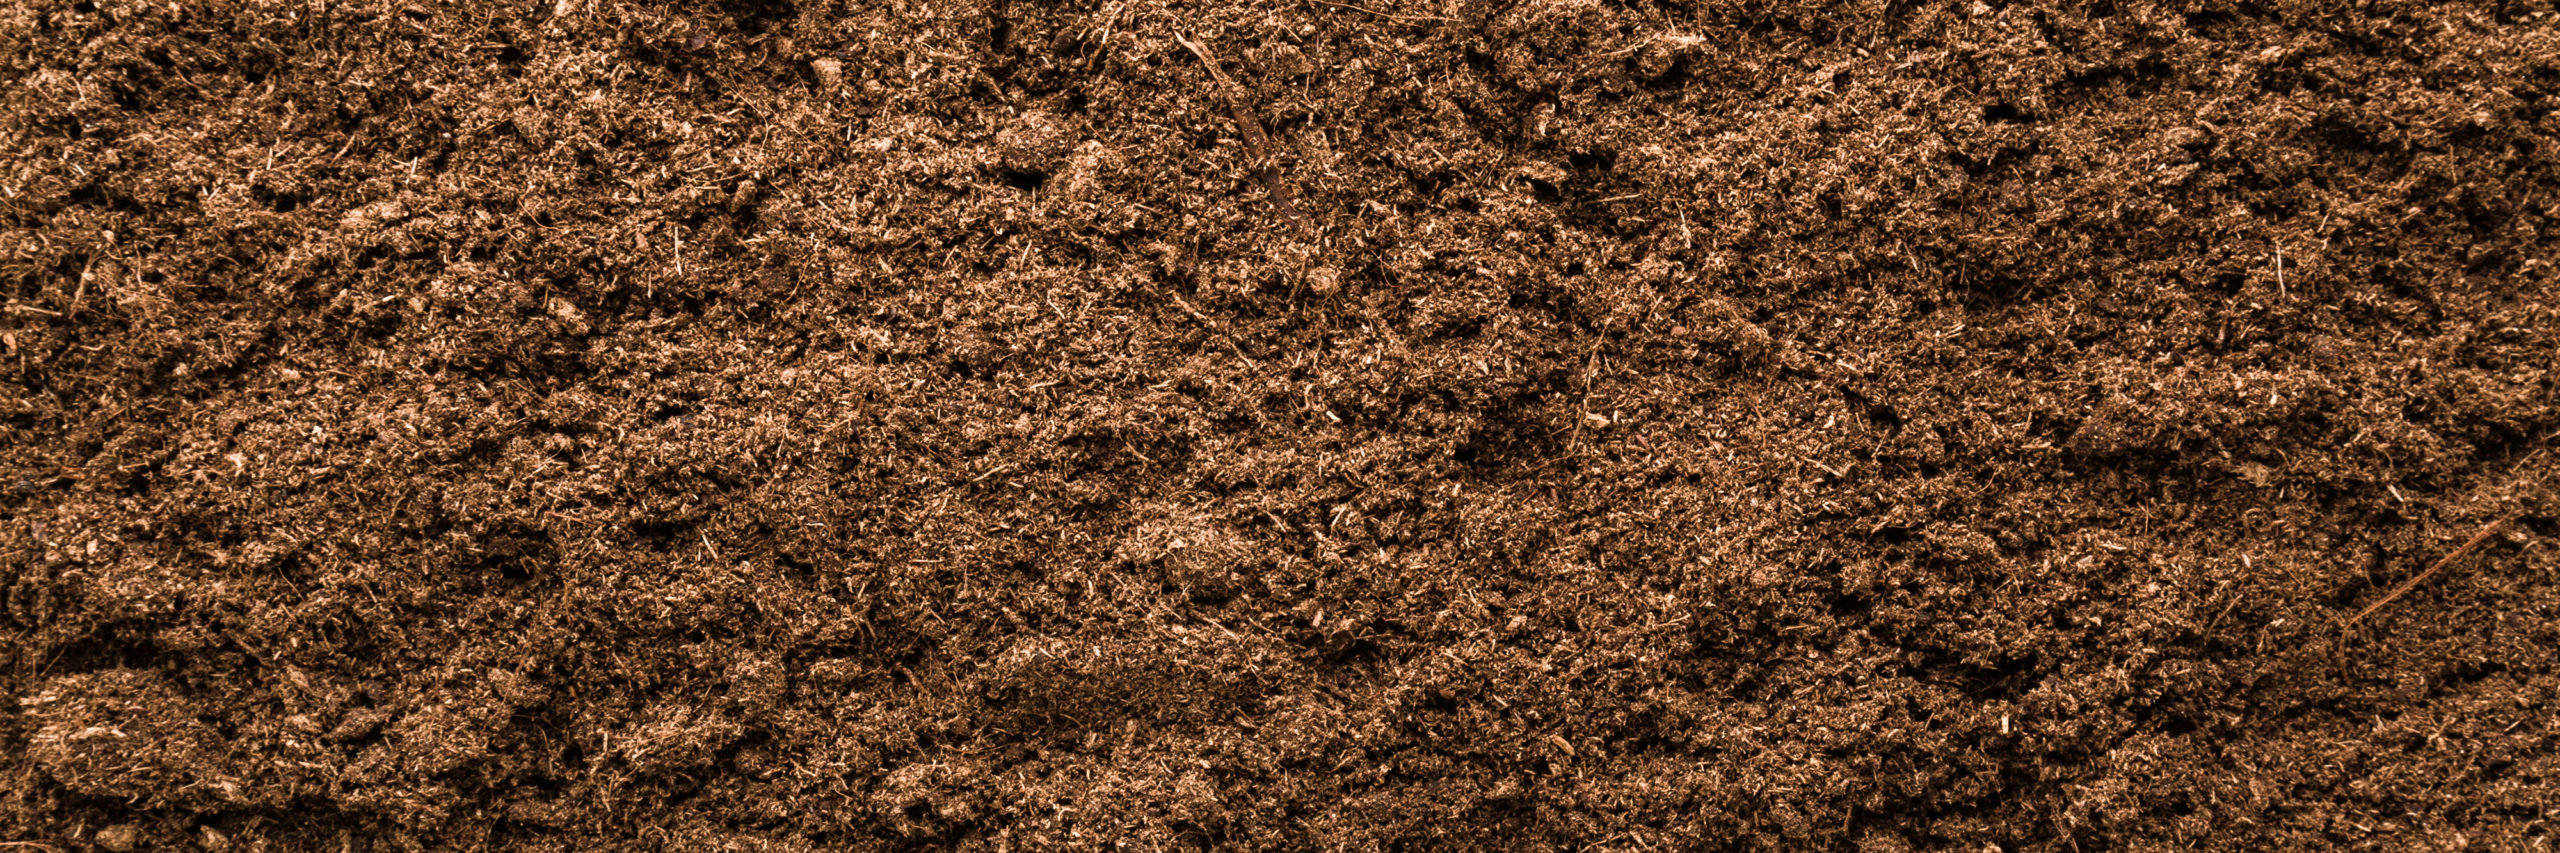 soil bioremediation